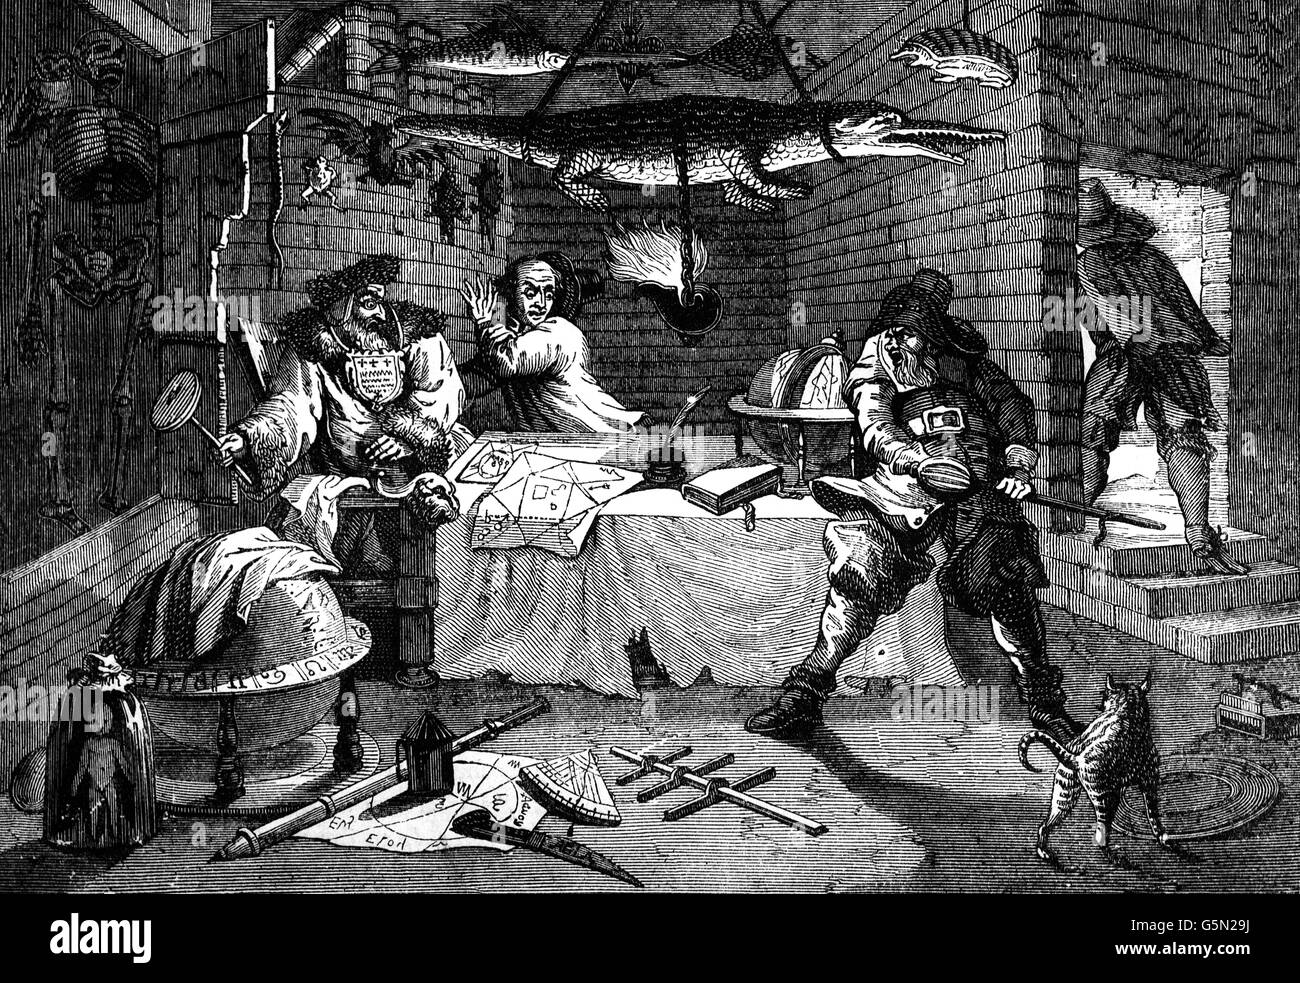 Eine Szene aus Hudibras, eine englische satirische Polemik auf Rundköpfen, Puritanern, Presbyterianern und viele der anderen Fraktionen im englischen Bürgerkrieg beteiligt.  geschrieben von Samuel Butler(1613 – 1680), Dichter und Satiriker. Stockfoto